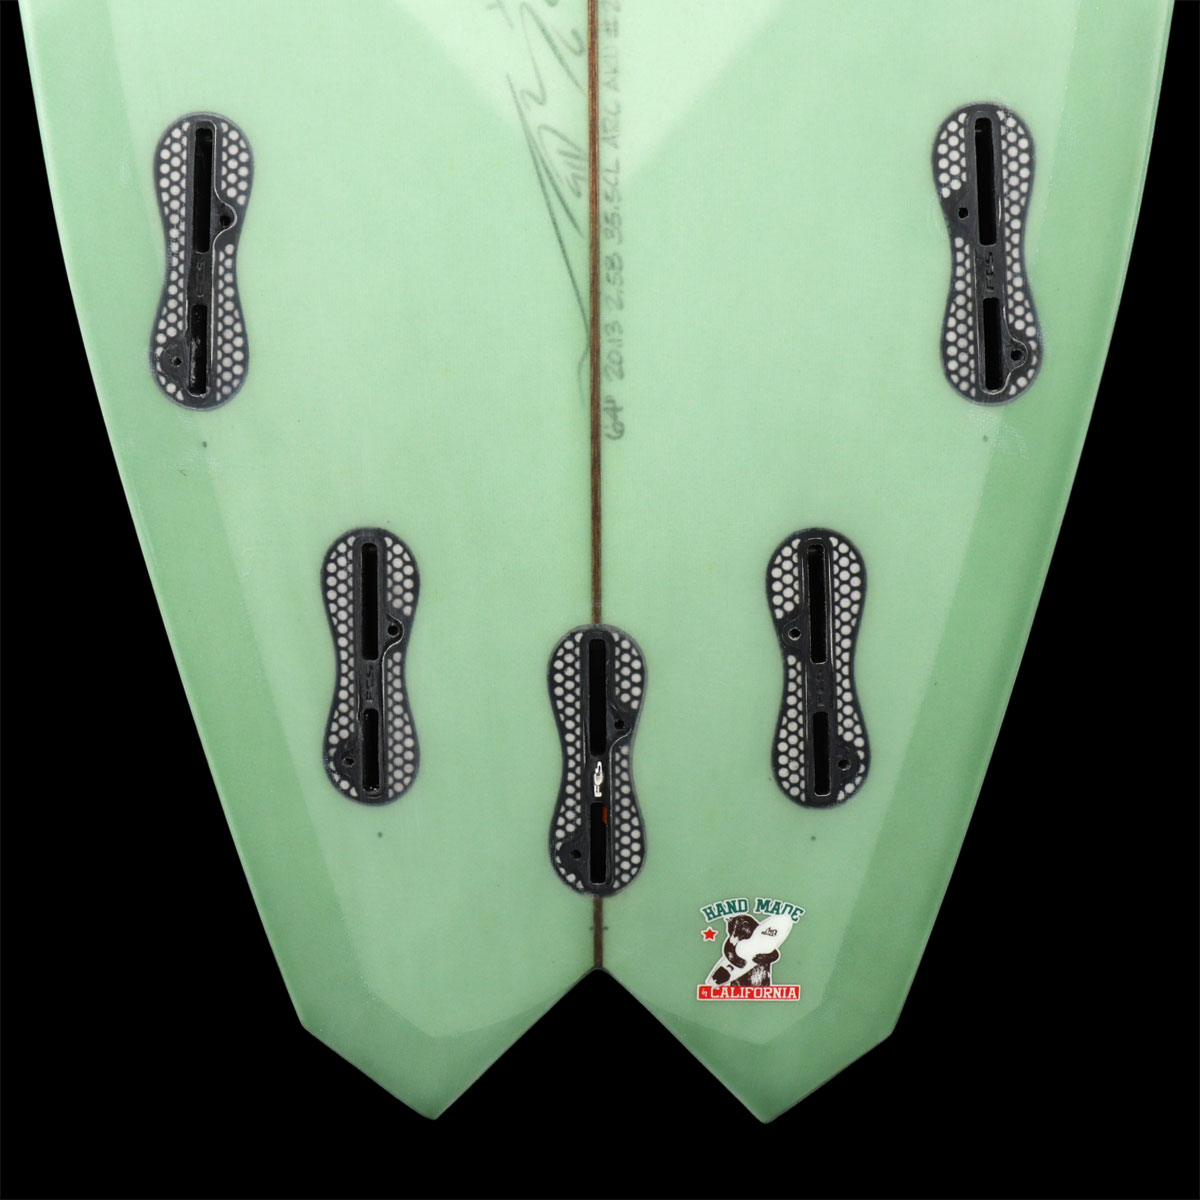 ロスト サーフボード 6'4 6.4 GRYDRA LOST Mayhem SURFBOARDS by グライドラ サーフィン フィッシュテール フィッシュボード メイヘム 高価値 サーフィン